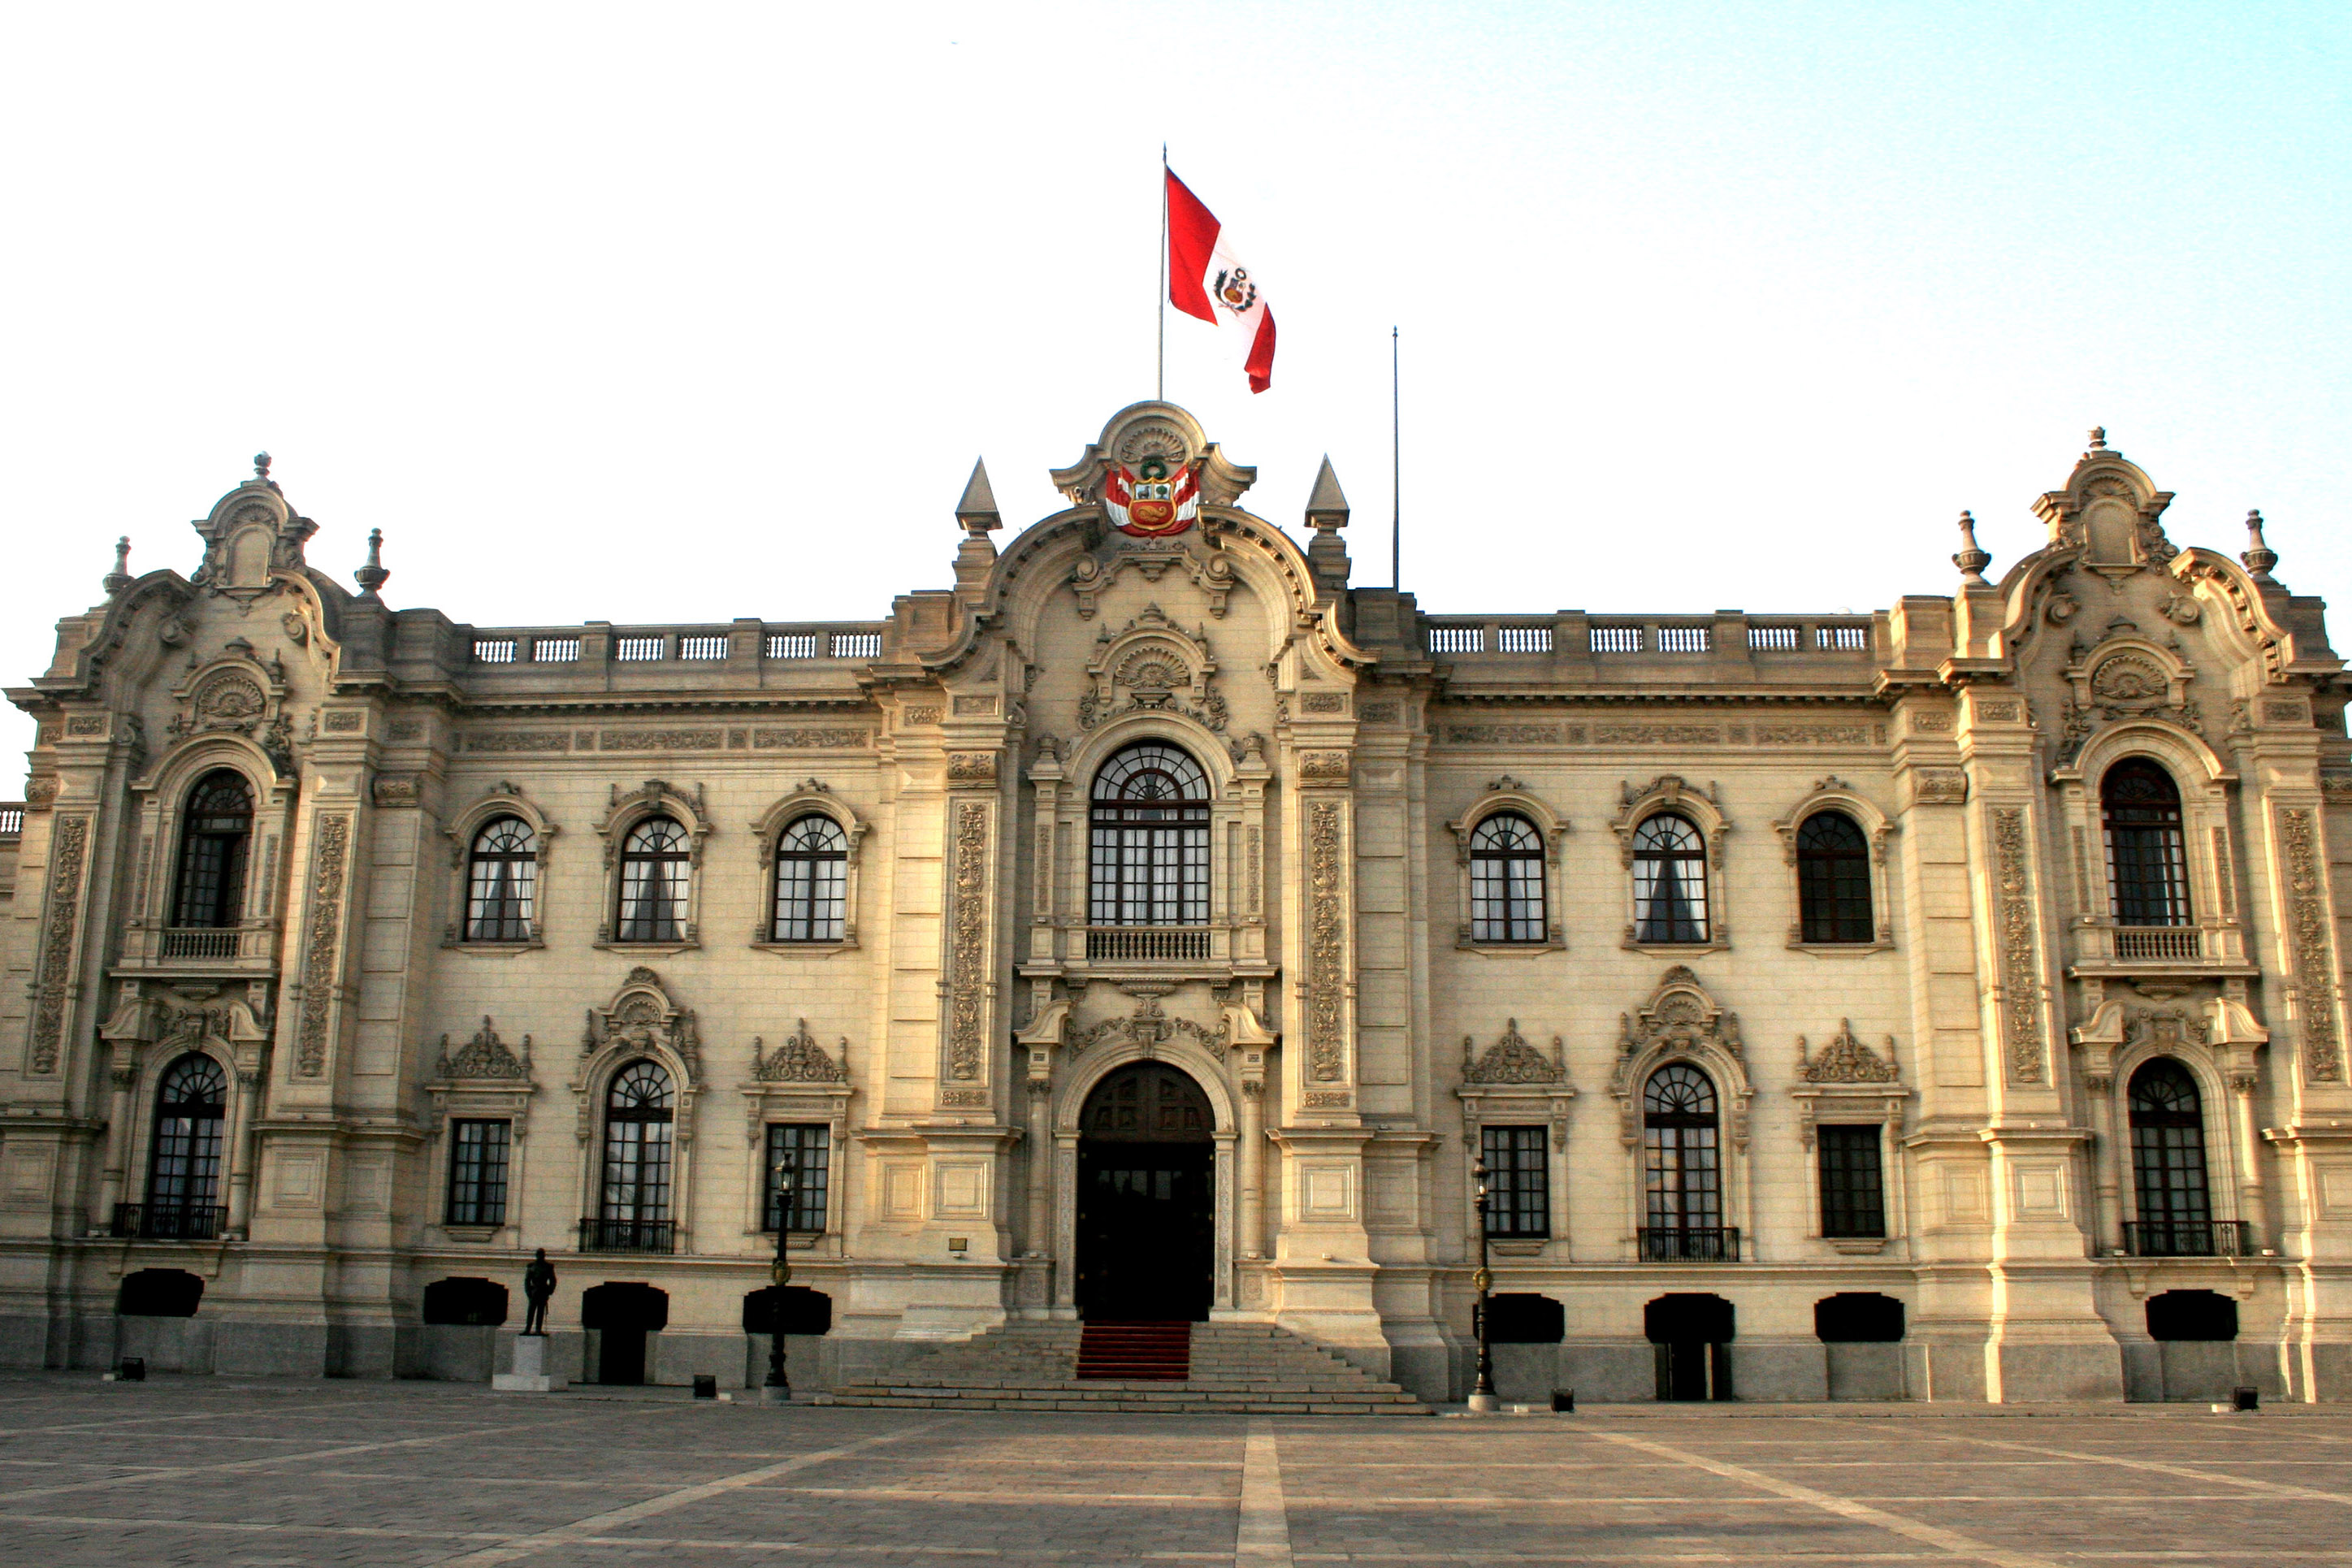 PERÚ: Gobierno presenta proyecto de Reforma Constitucional de vacancia y cuestión de confianza para lograr equilibrio de poderes y gobernabilidad